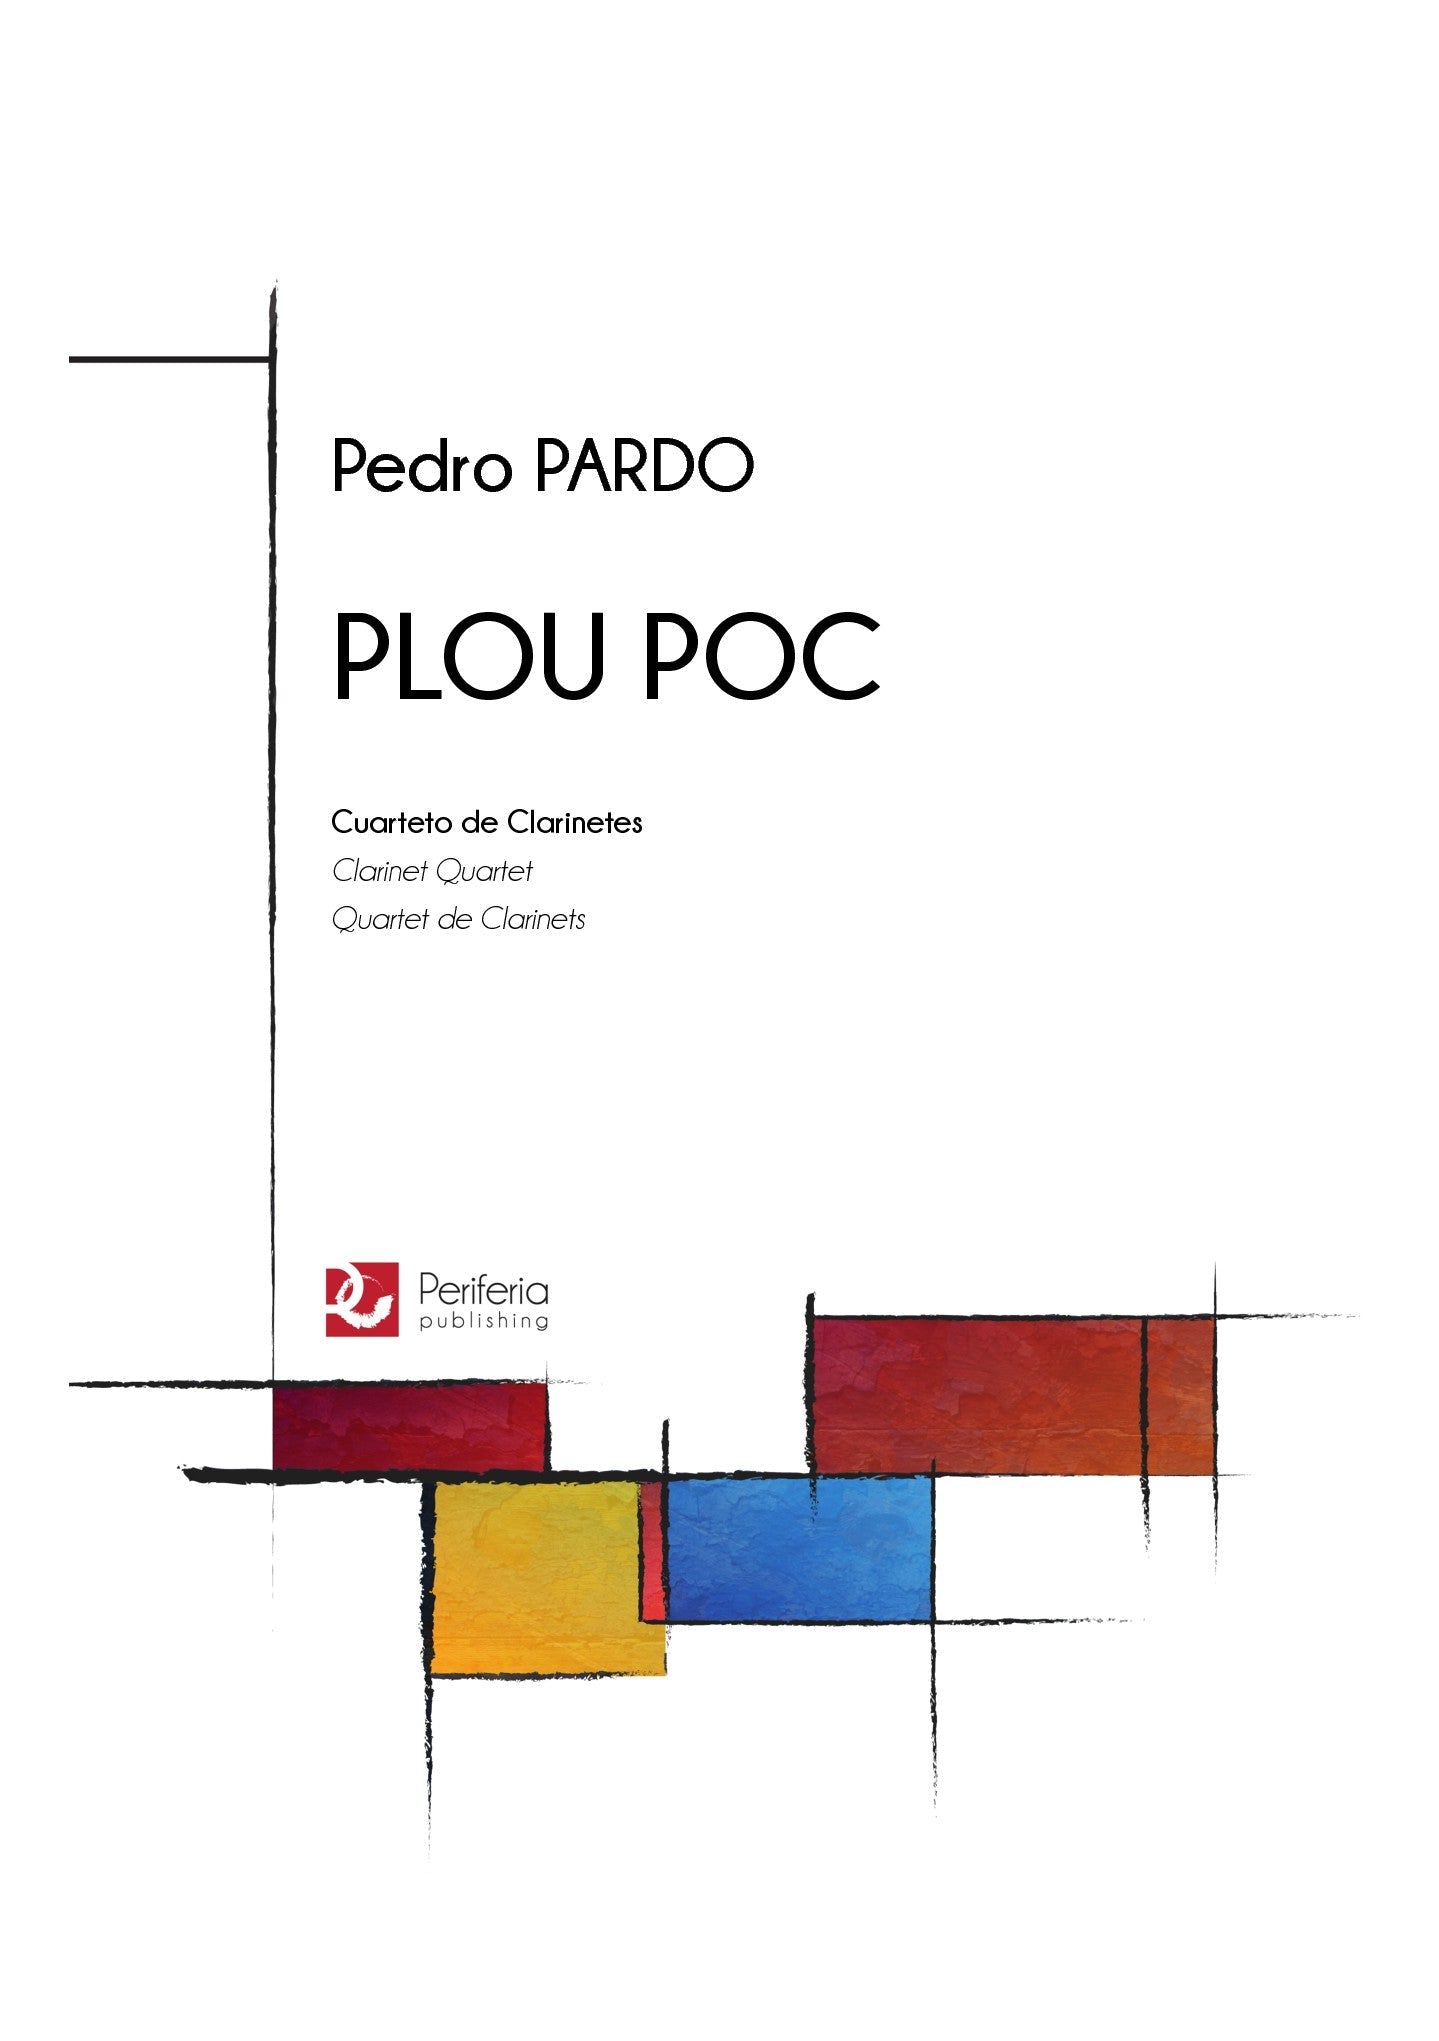 Pardo - Plou Poc for Clarinet Quartet